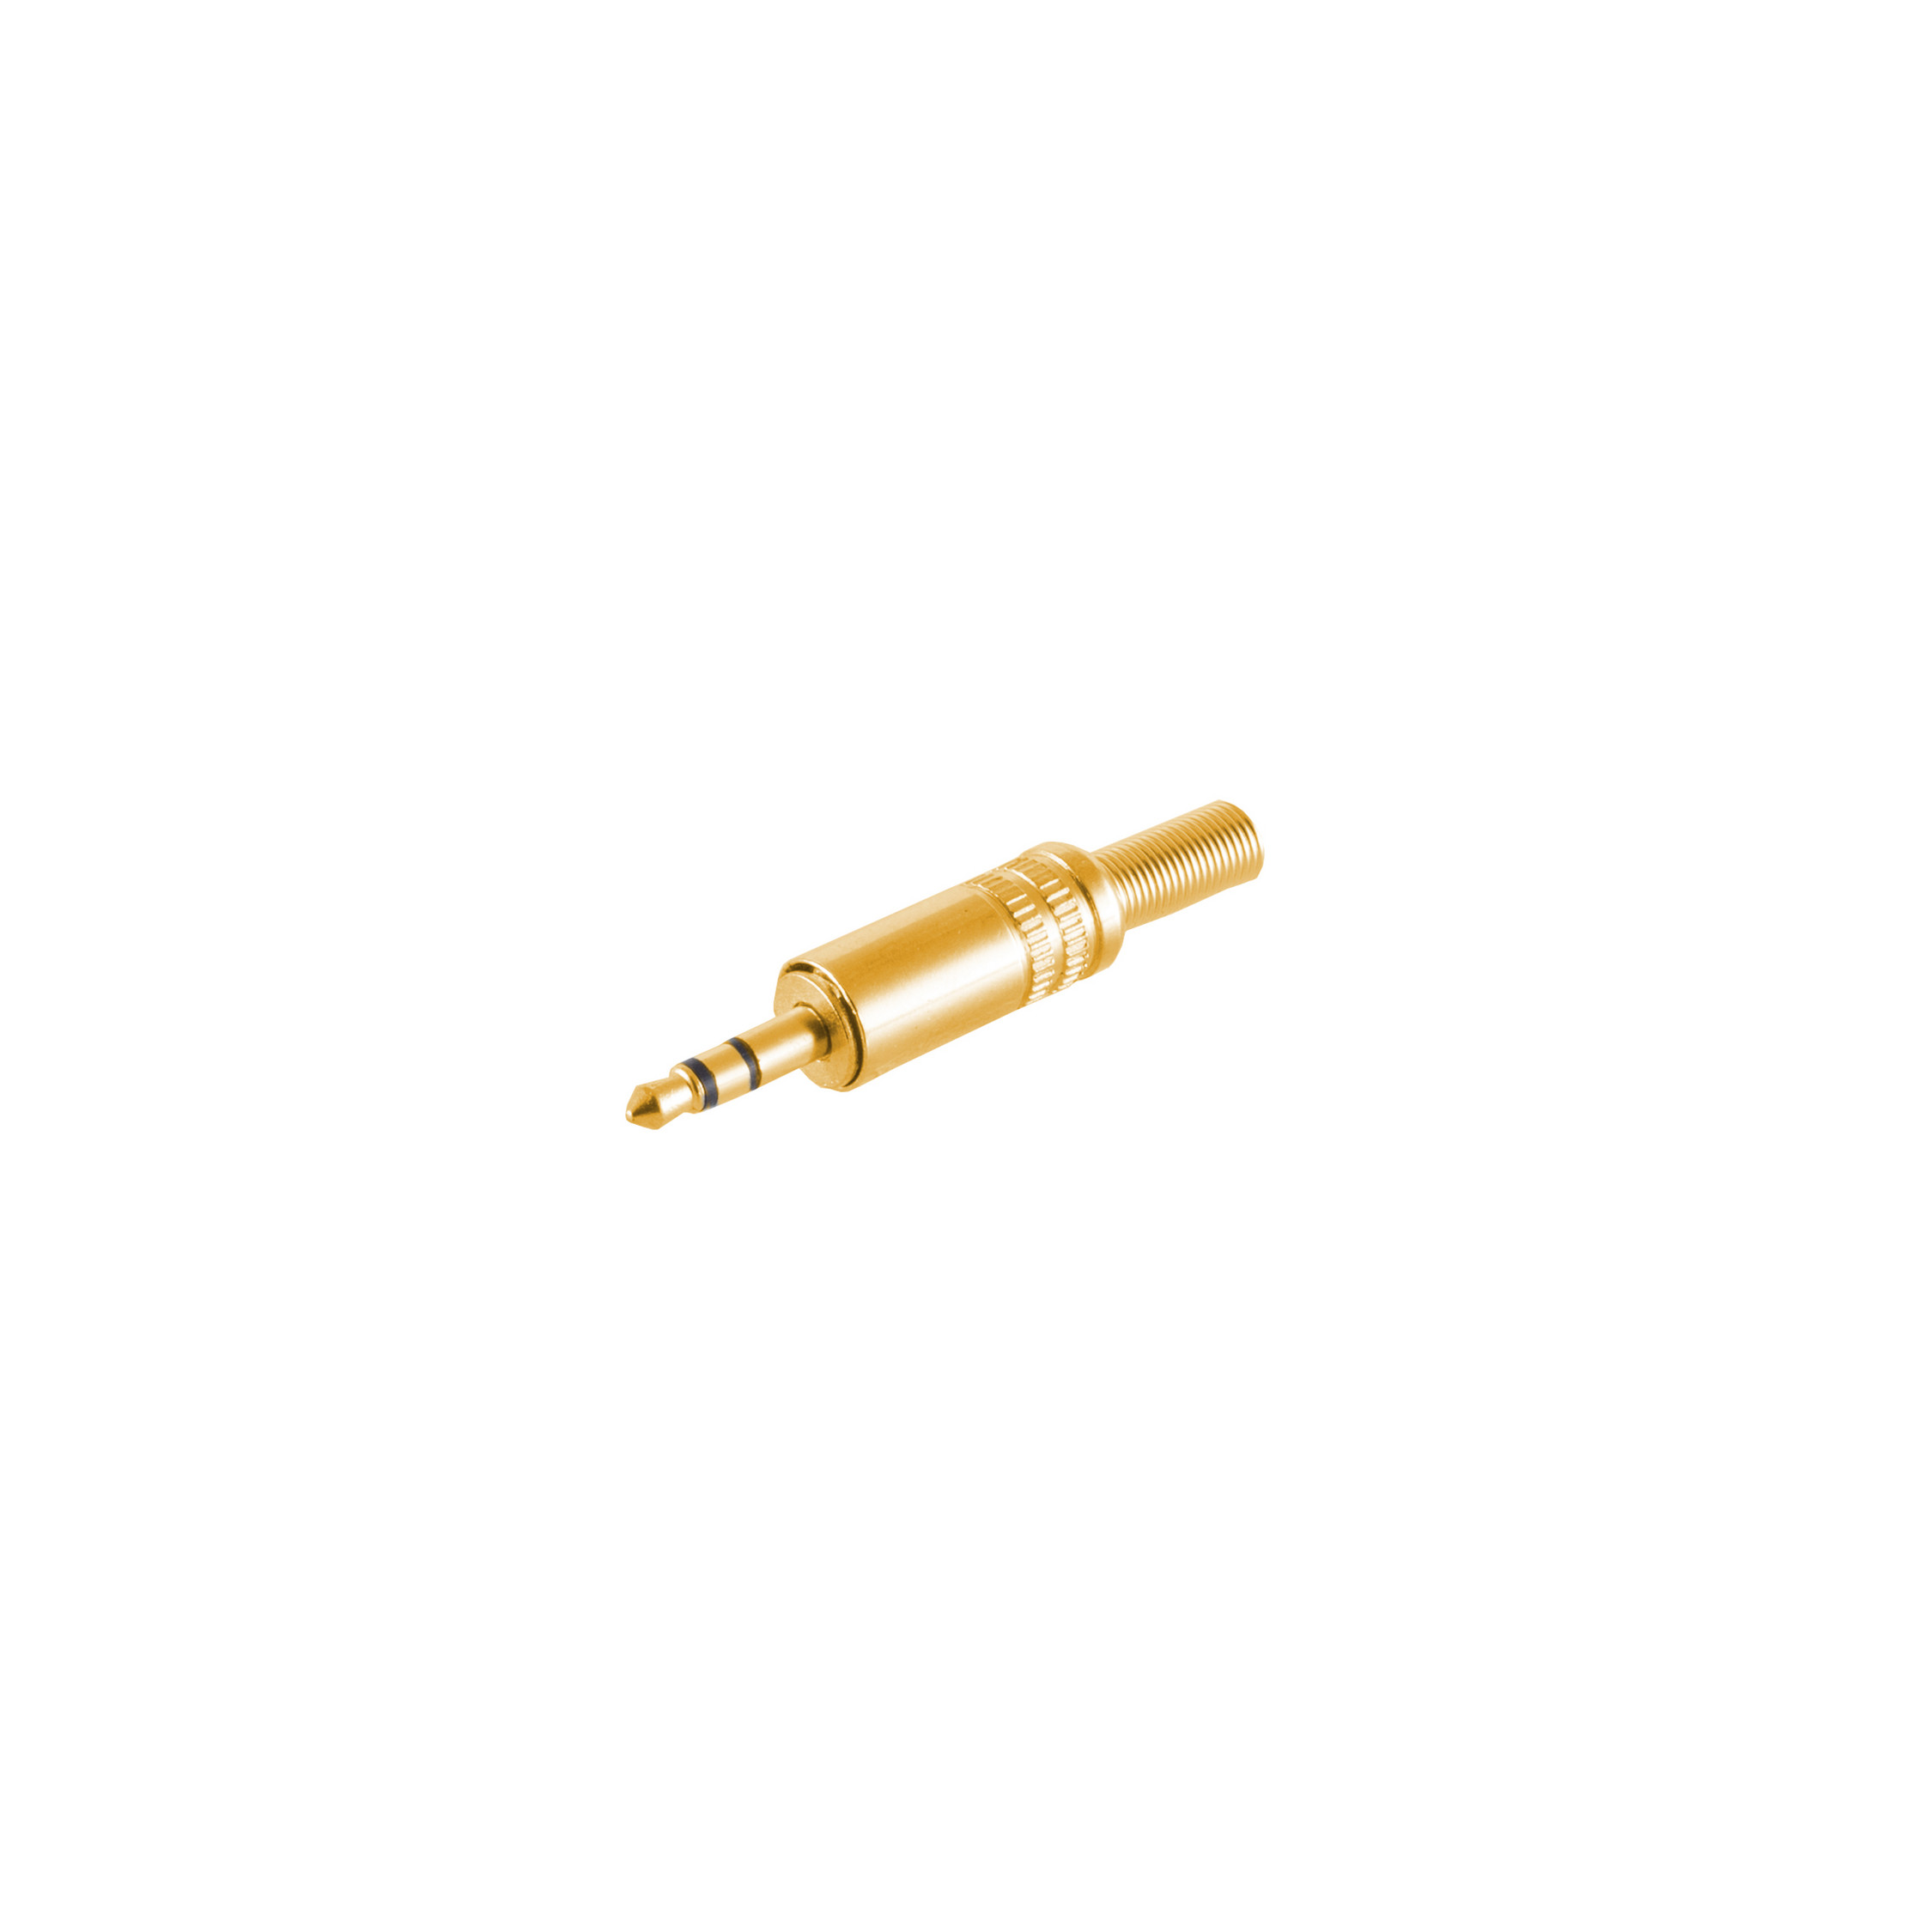 CONNECTIVITY 3,5mm, MAXIMUM Stereo Klinke Klinkenstecker vergoldet Metall S/CONN